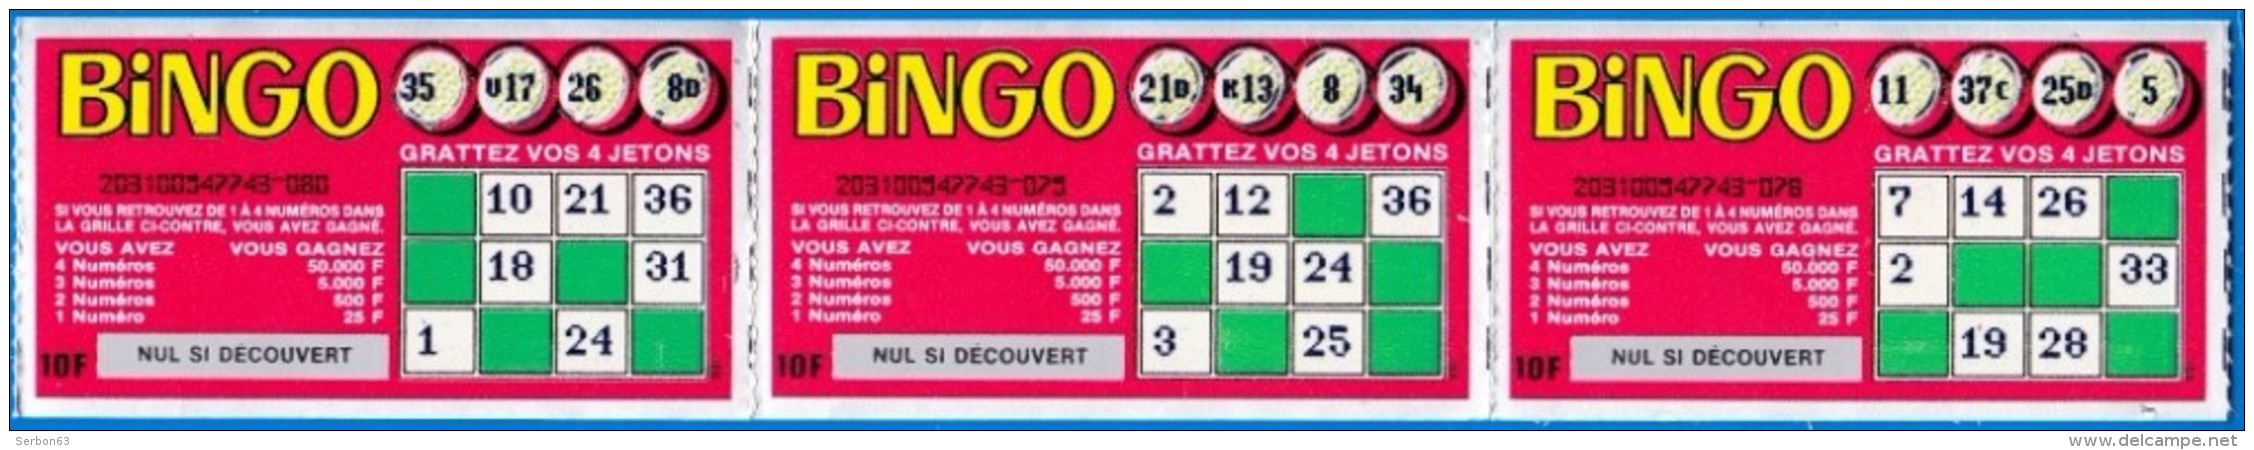 3 BINGO ATTACHES TICKET DE GRATTAGE PARFAIT LOTERIE FDJ FRANCAISE DES JEUX 203100547743-078 A 080 EMISSION ISB N° 1 - Lottery Tickets